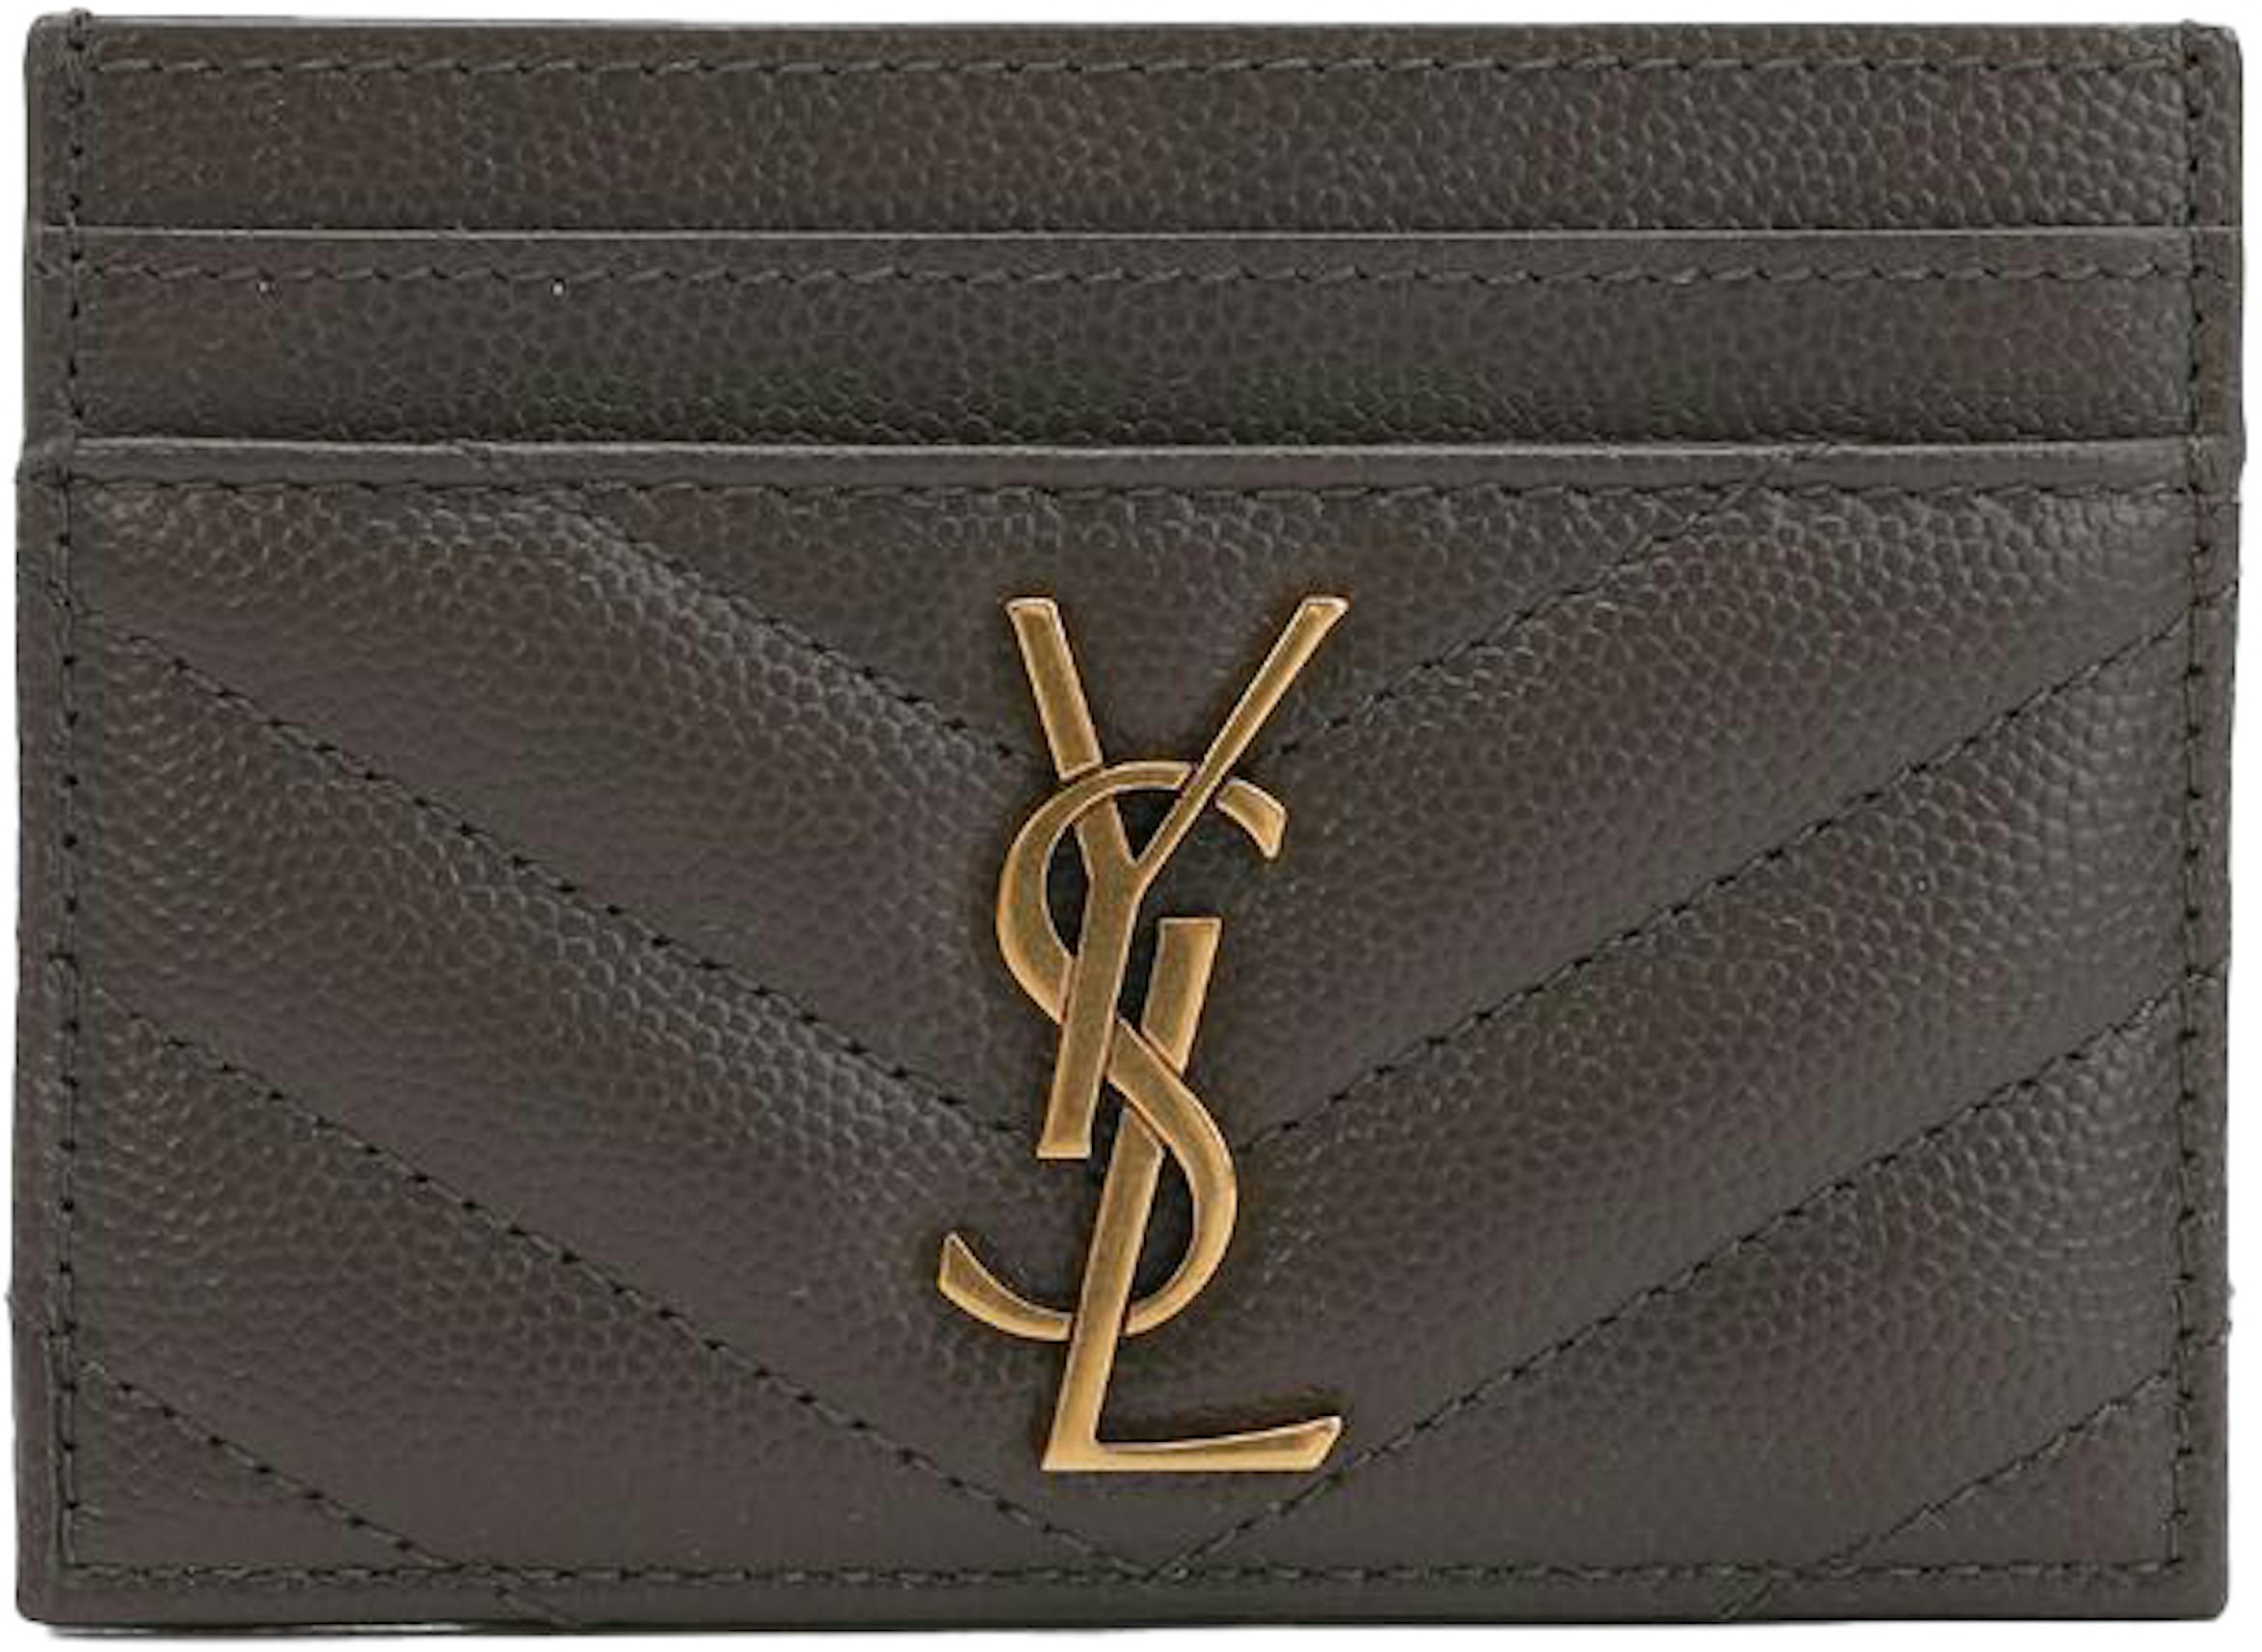 Saint Laurent YSL Monogram Grain de Poudre Leather Card Case, Golden  Hardware